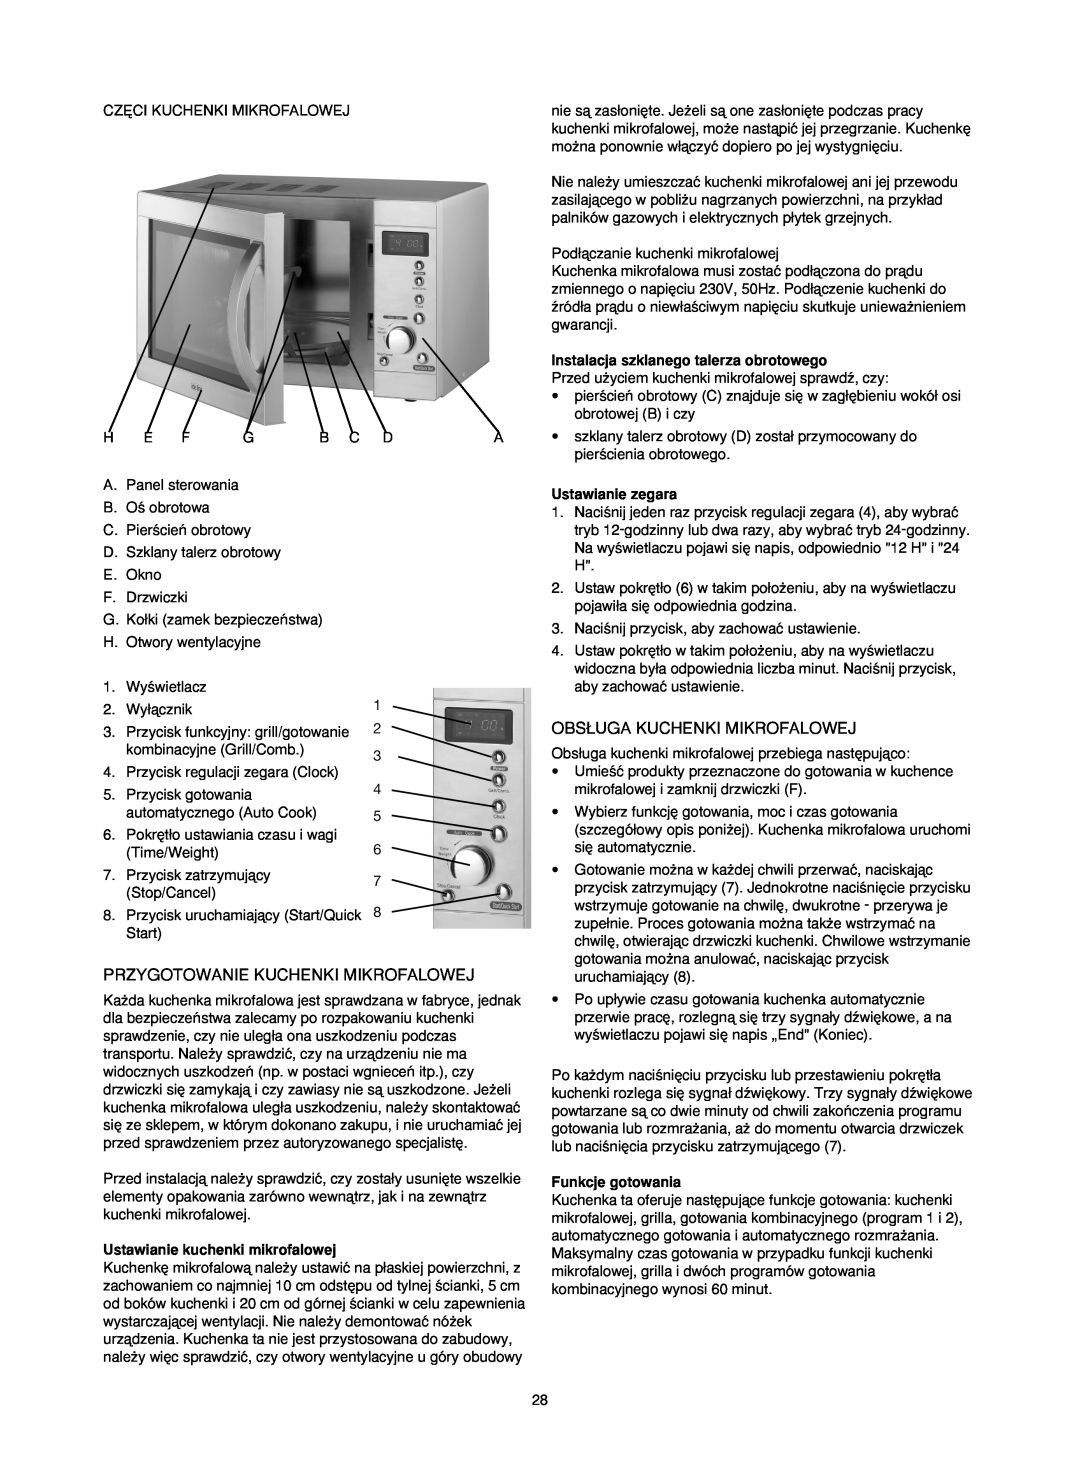 Melissa 753-087 manual Przygotowanie Kuchenki Mikrofalowej, Obs¸Uga Kuchenki Mikrofalowej, Ustawianie kuchenki mikrofalowej 